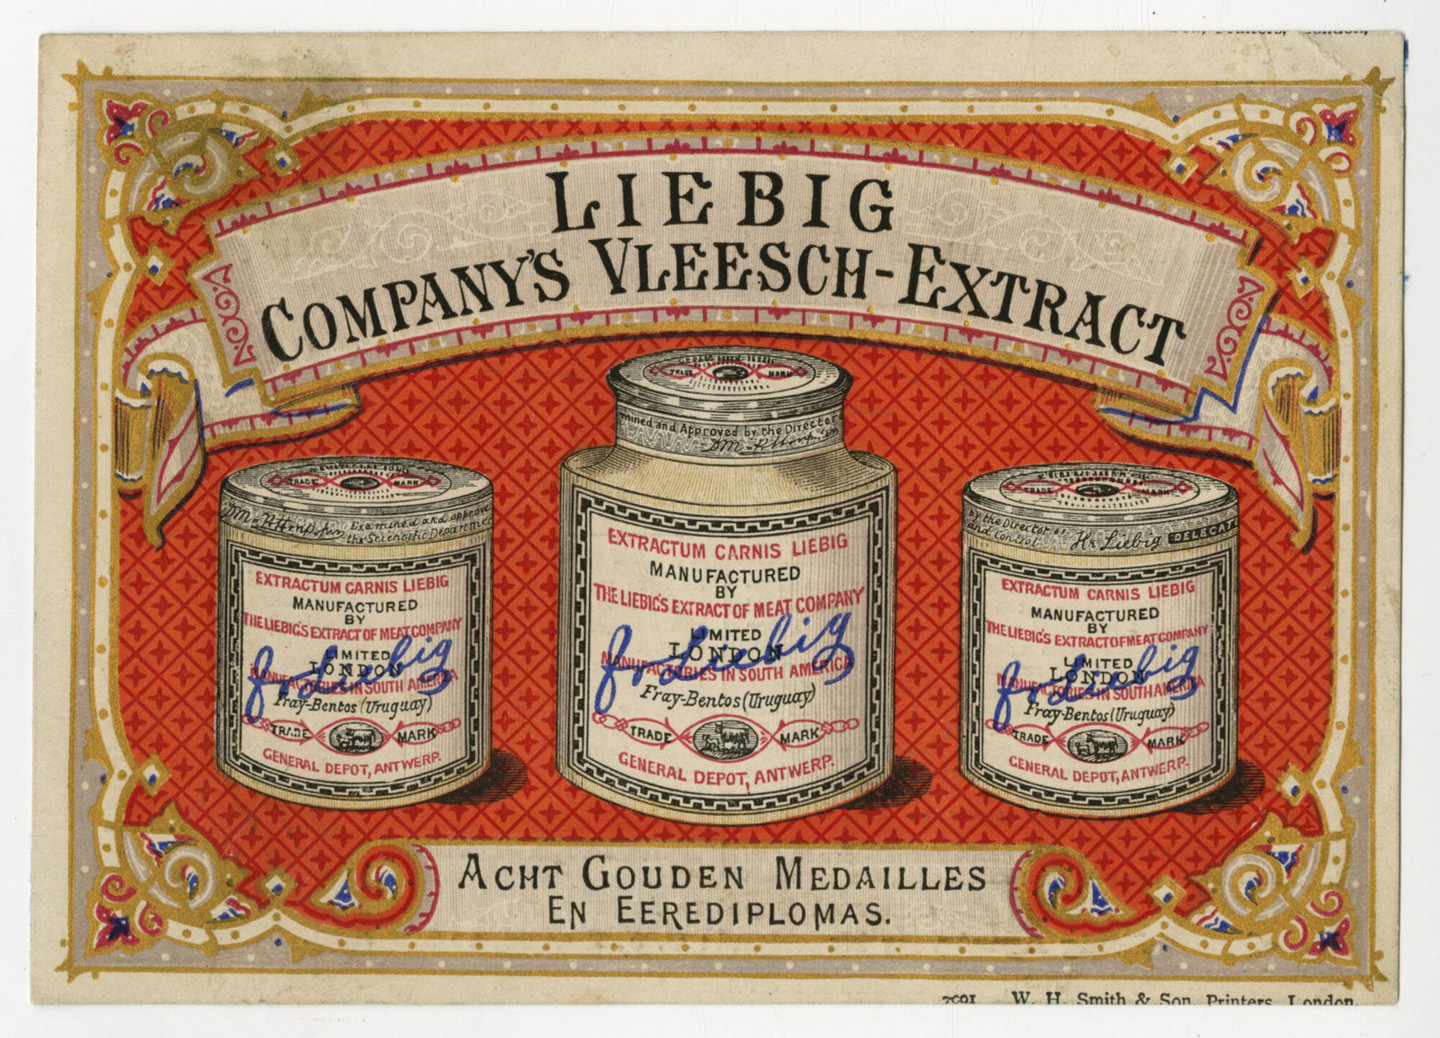 Reclamekaart voor vleesextract van het merk Liebig